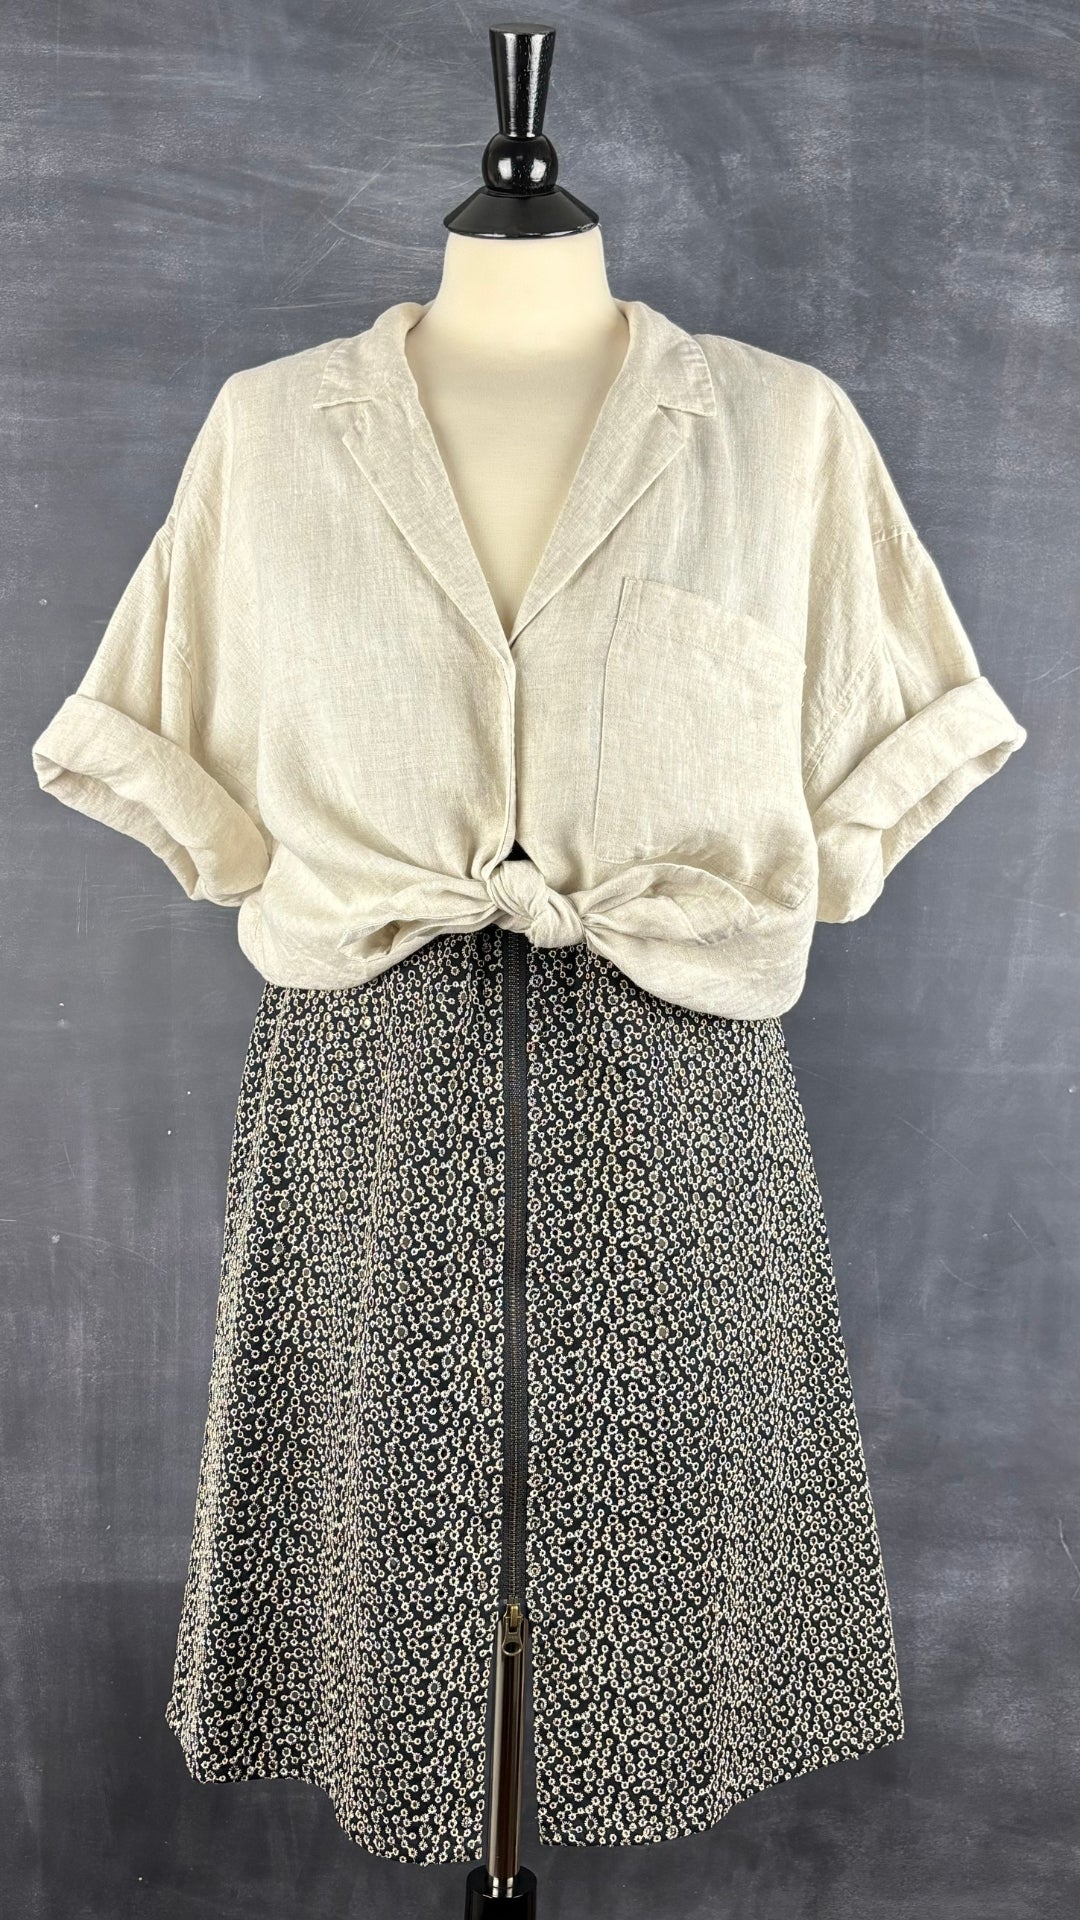 Robe en broderie anglaise Isabelle Elie Boutique, taille large. Vue de l'agencement avec le chemisier en lin naturel.